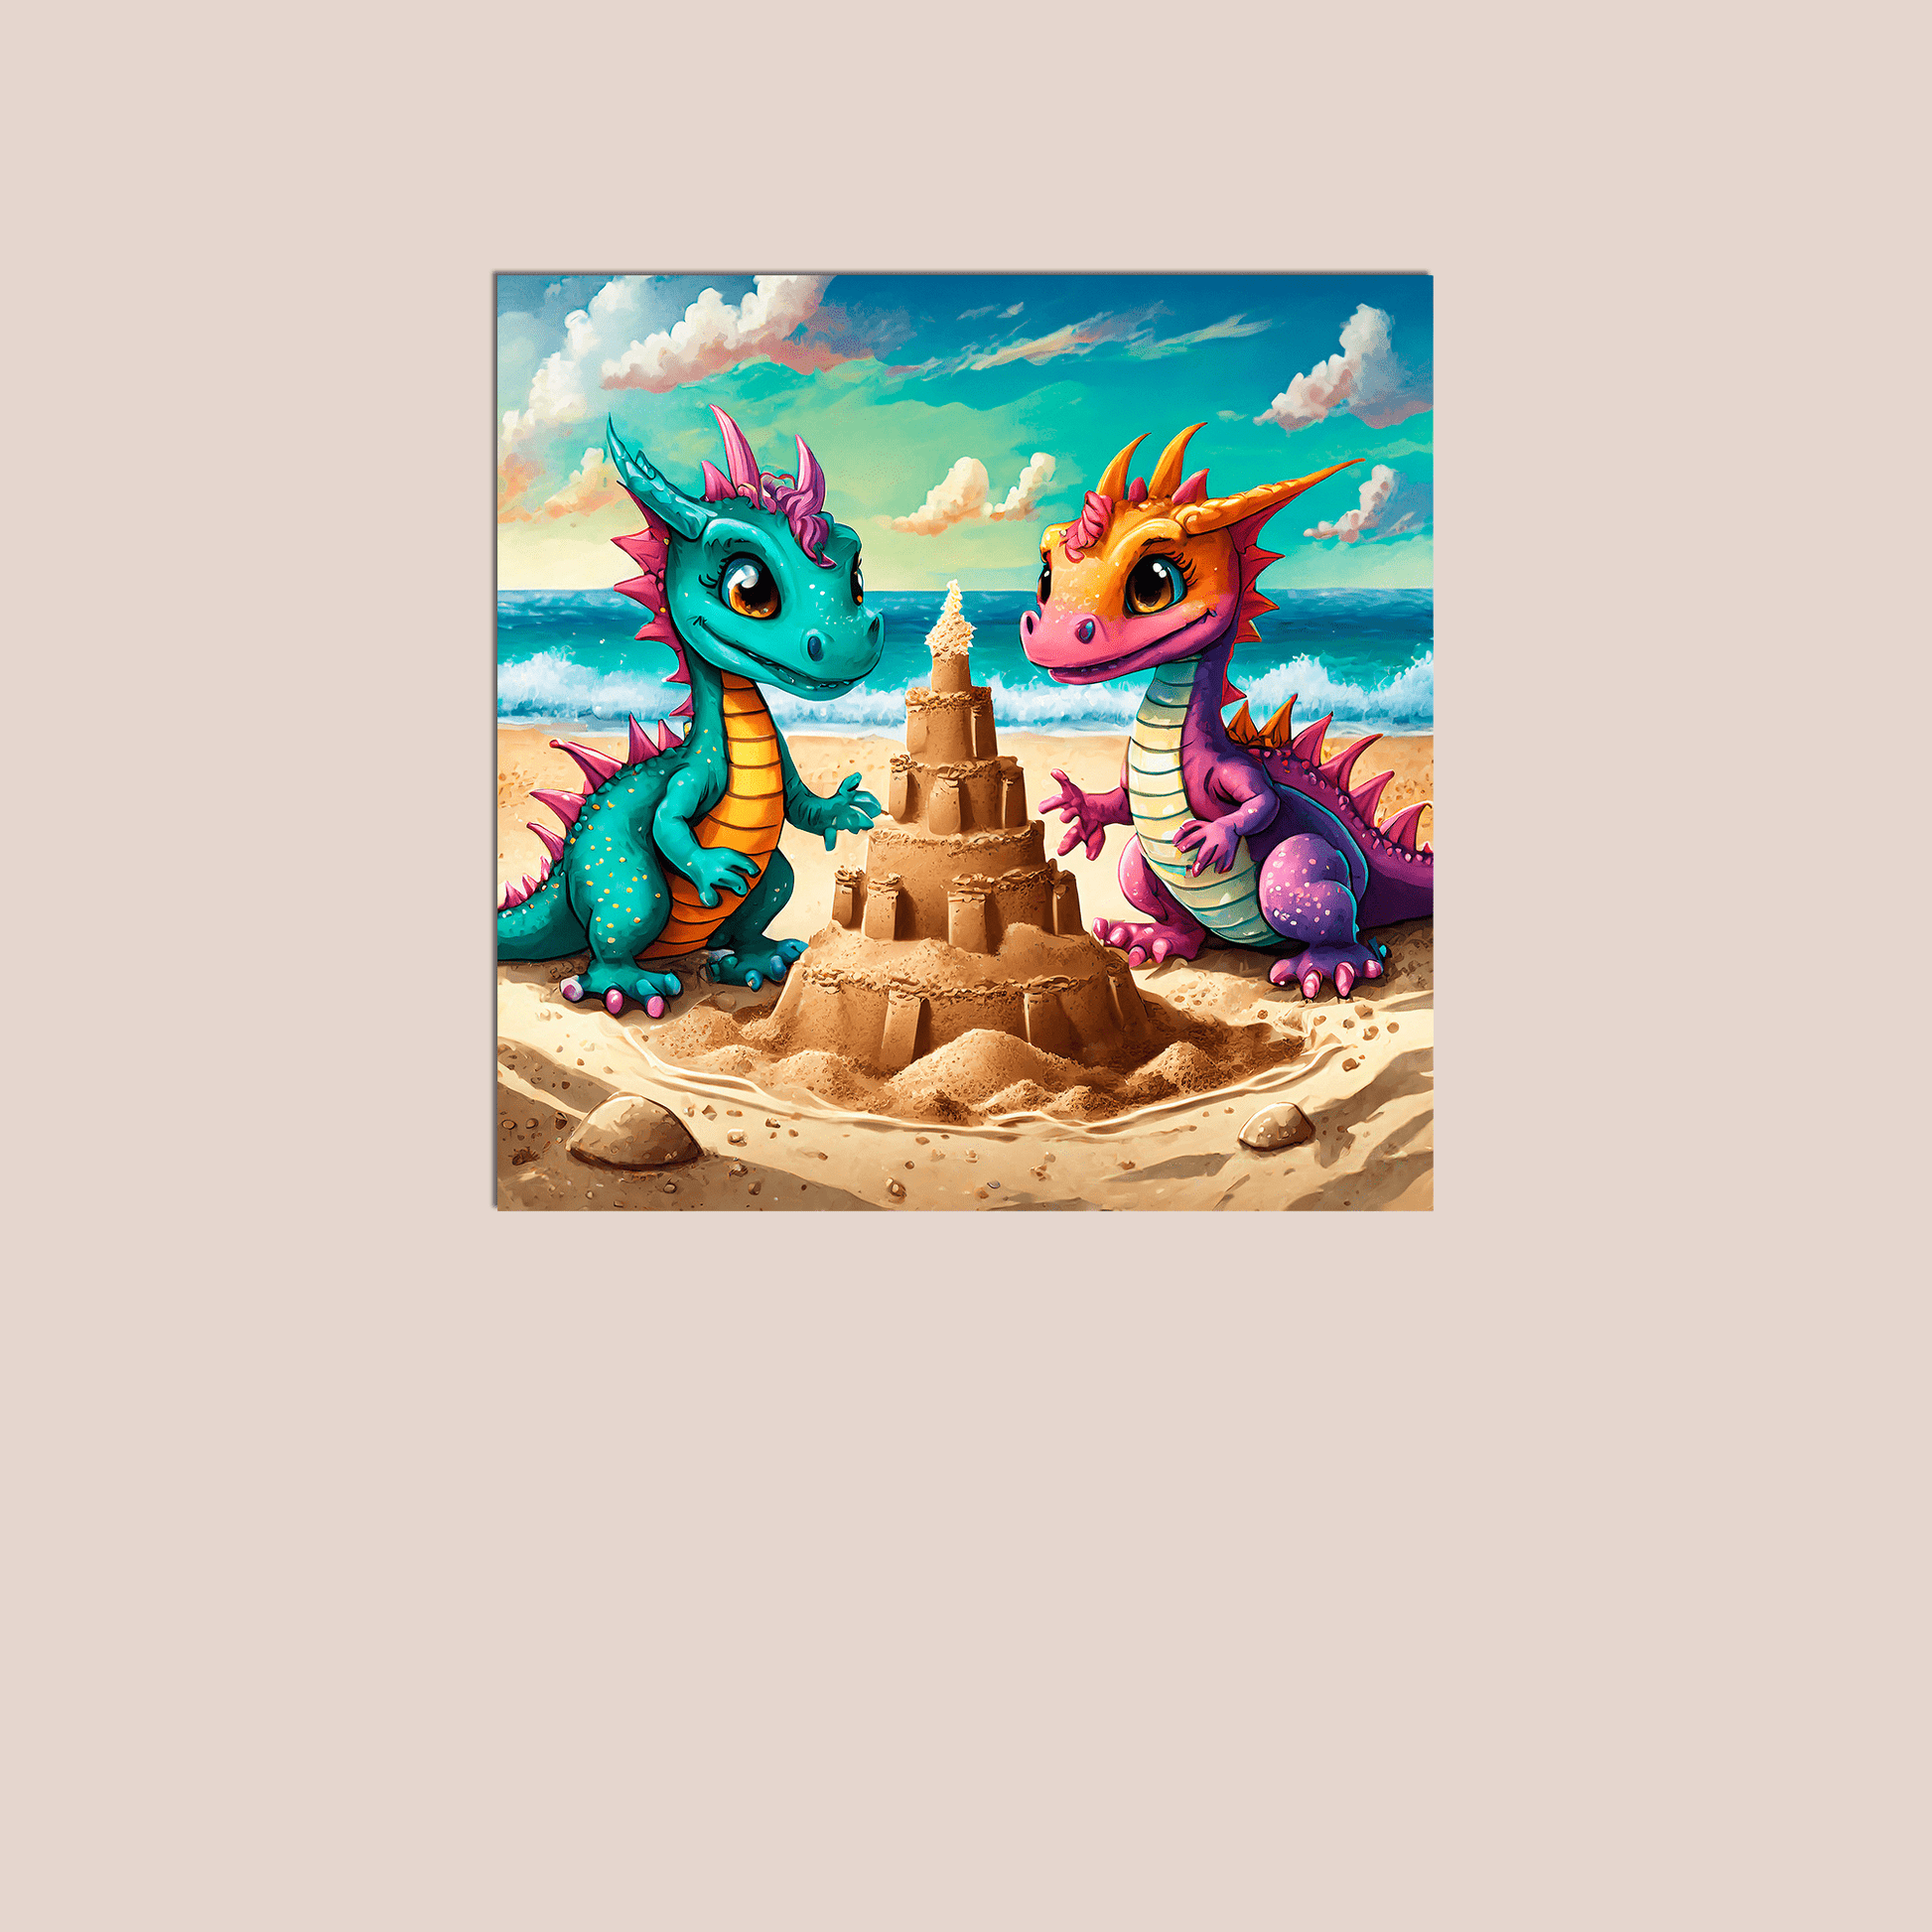 Baby Dragons at the Beach - Metal Poster - Premium Metal Poster